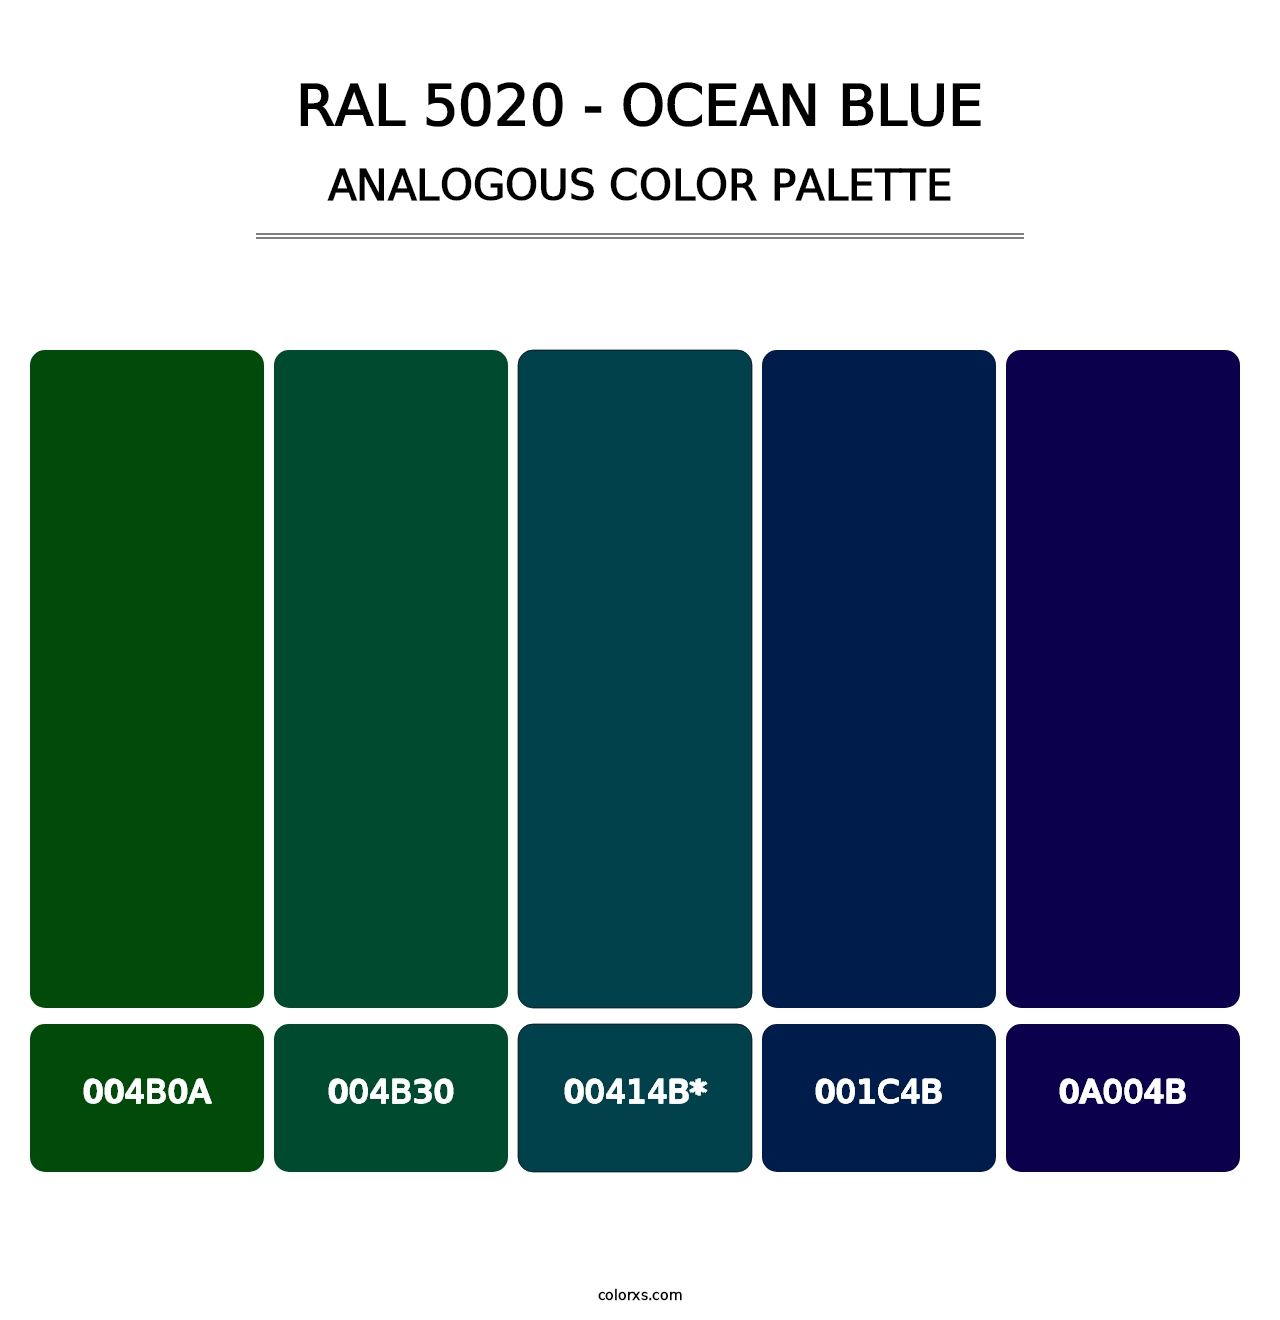 RAL 5020 - Ocean Blue - Analogous Color Palette